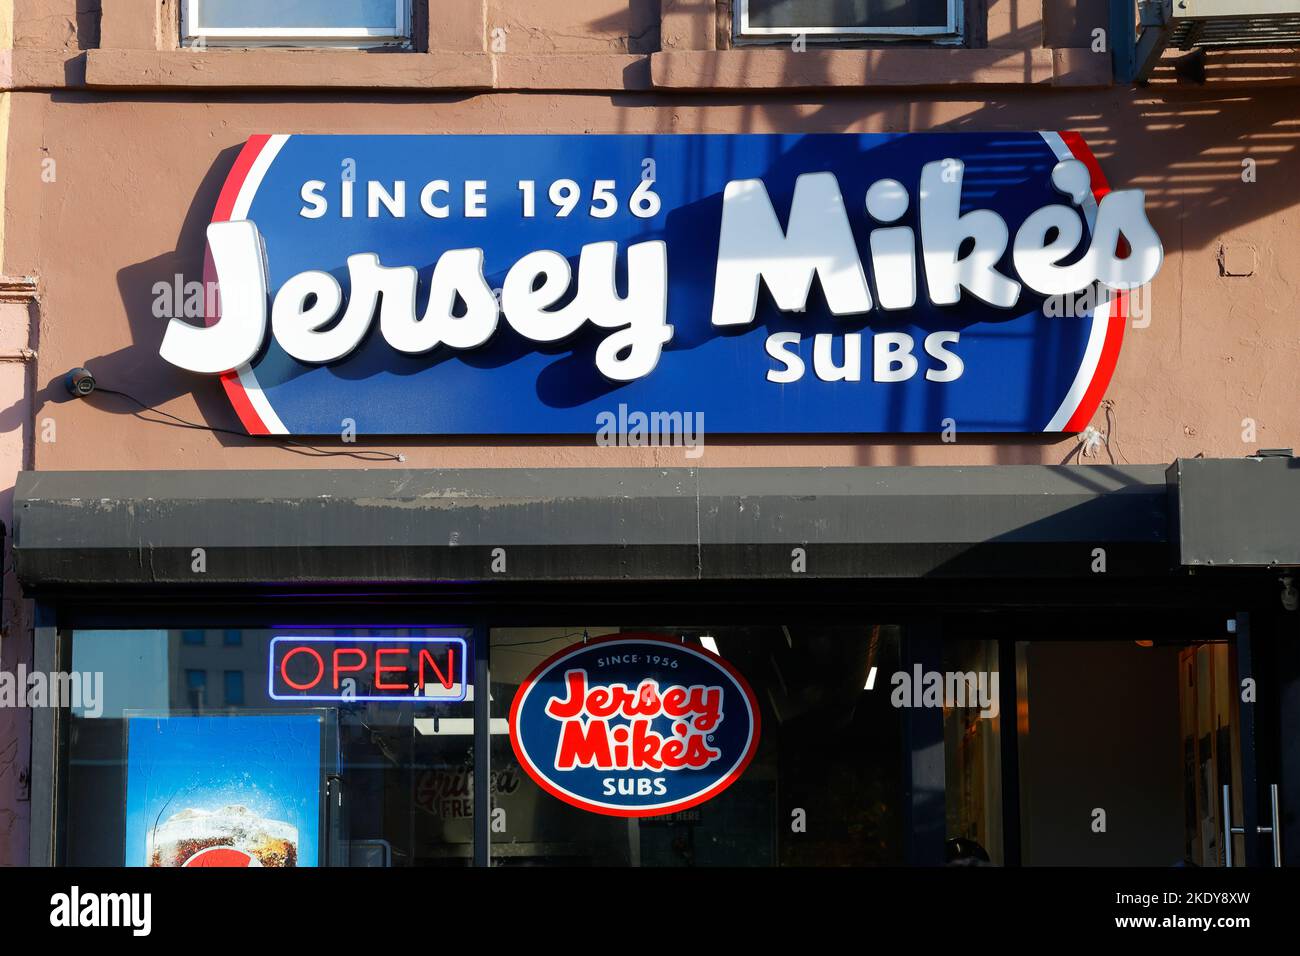 Señalización para Jersey Mike's Subs en una tienda de Nueva York. Foto de stock